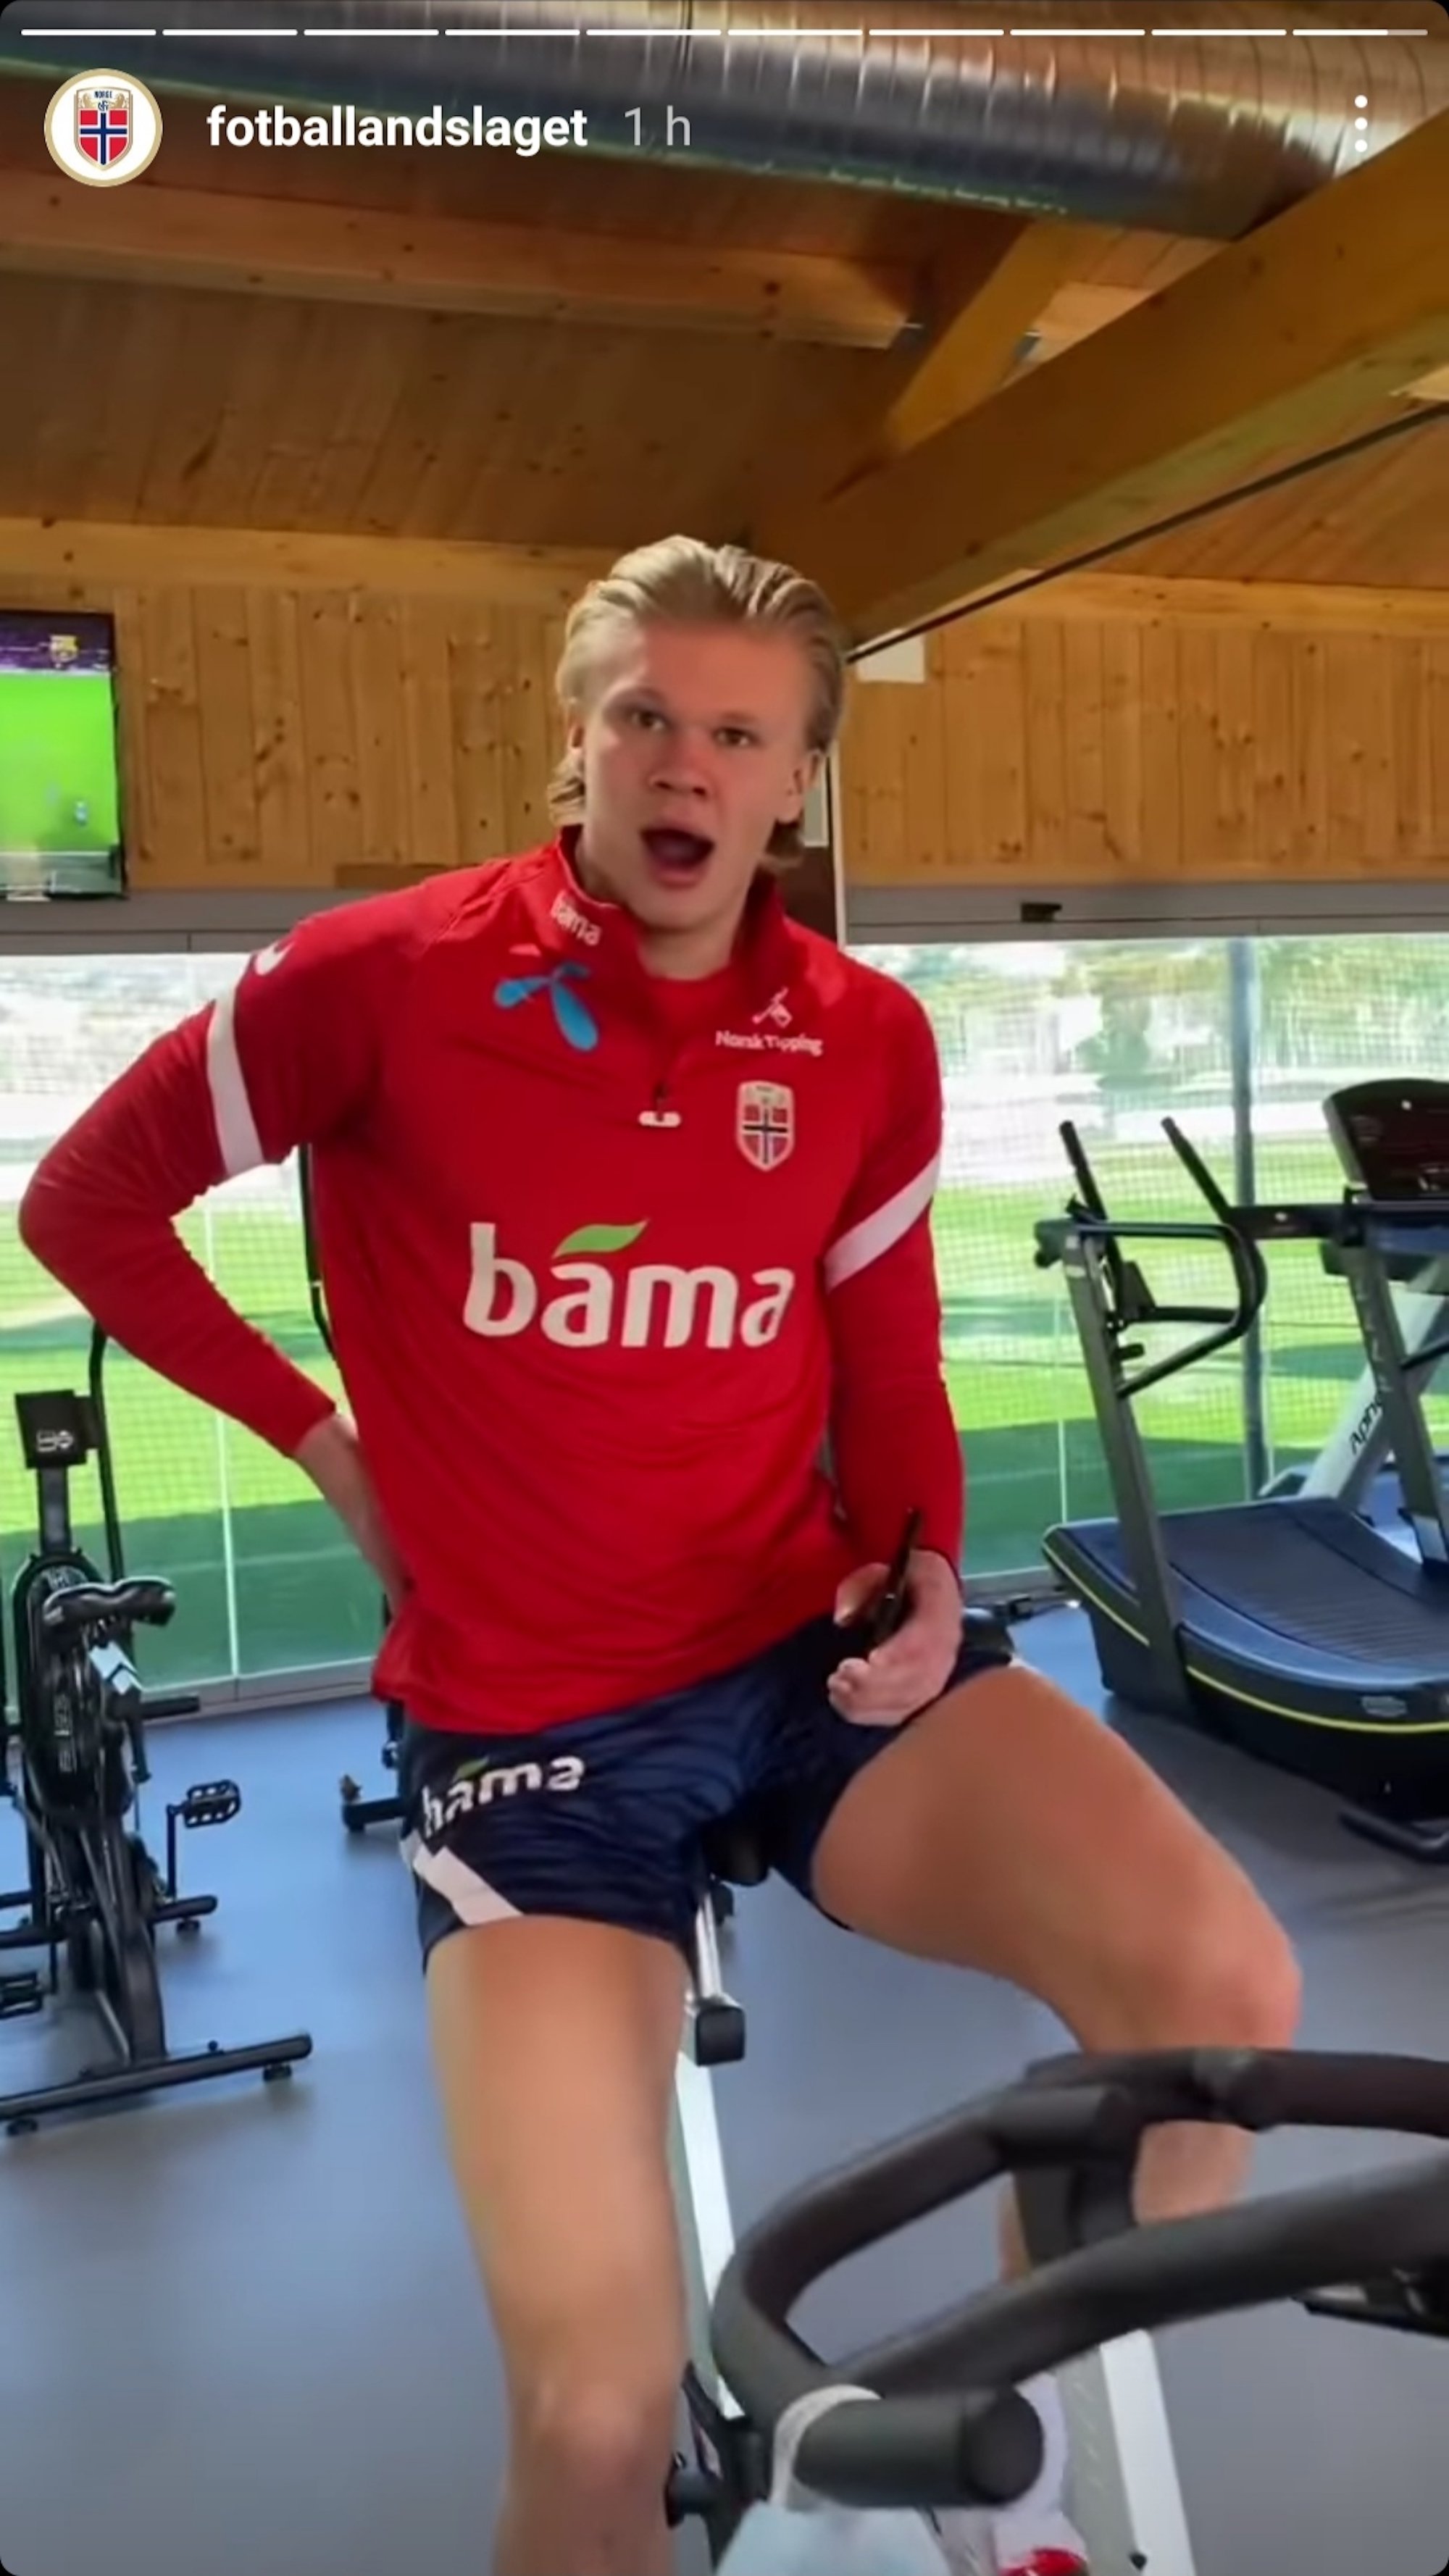 La selección noruega de Haaland entrena viendo BarçaTV